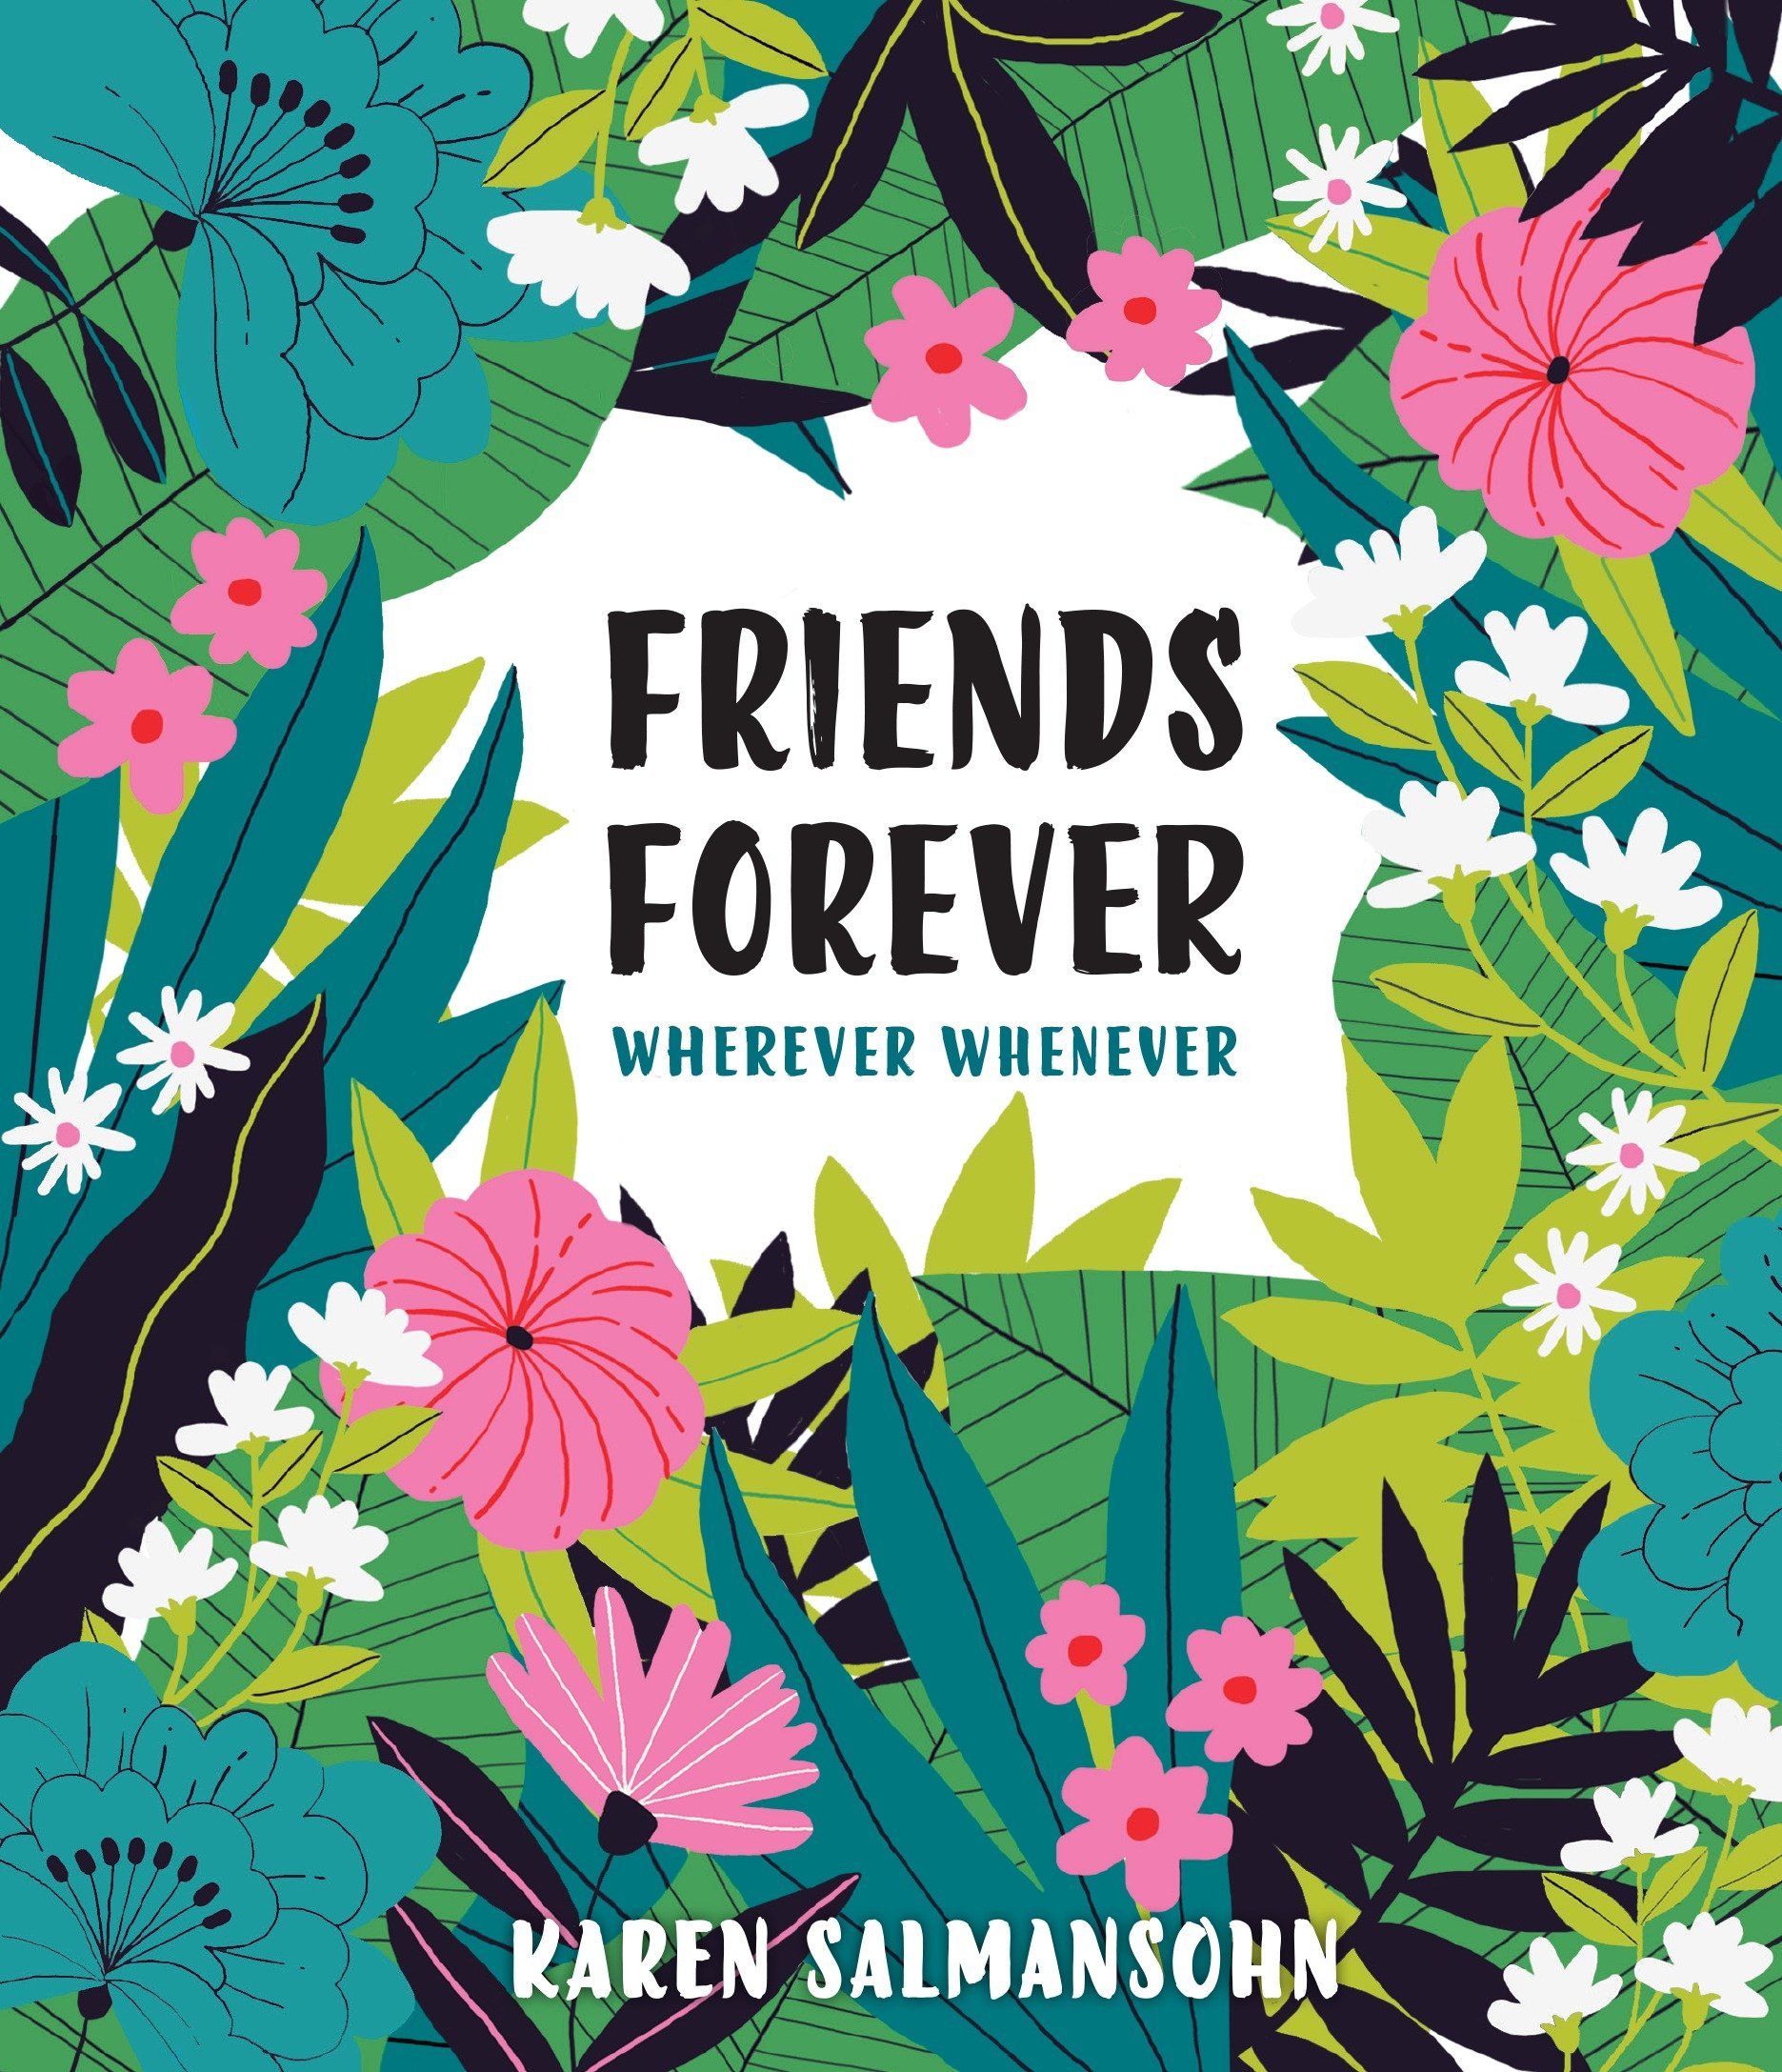 Friends Forever Wherever Whenever | Karen Salmansohn